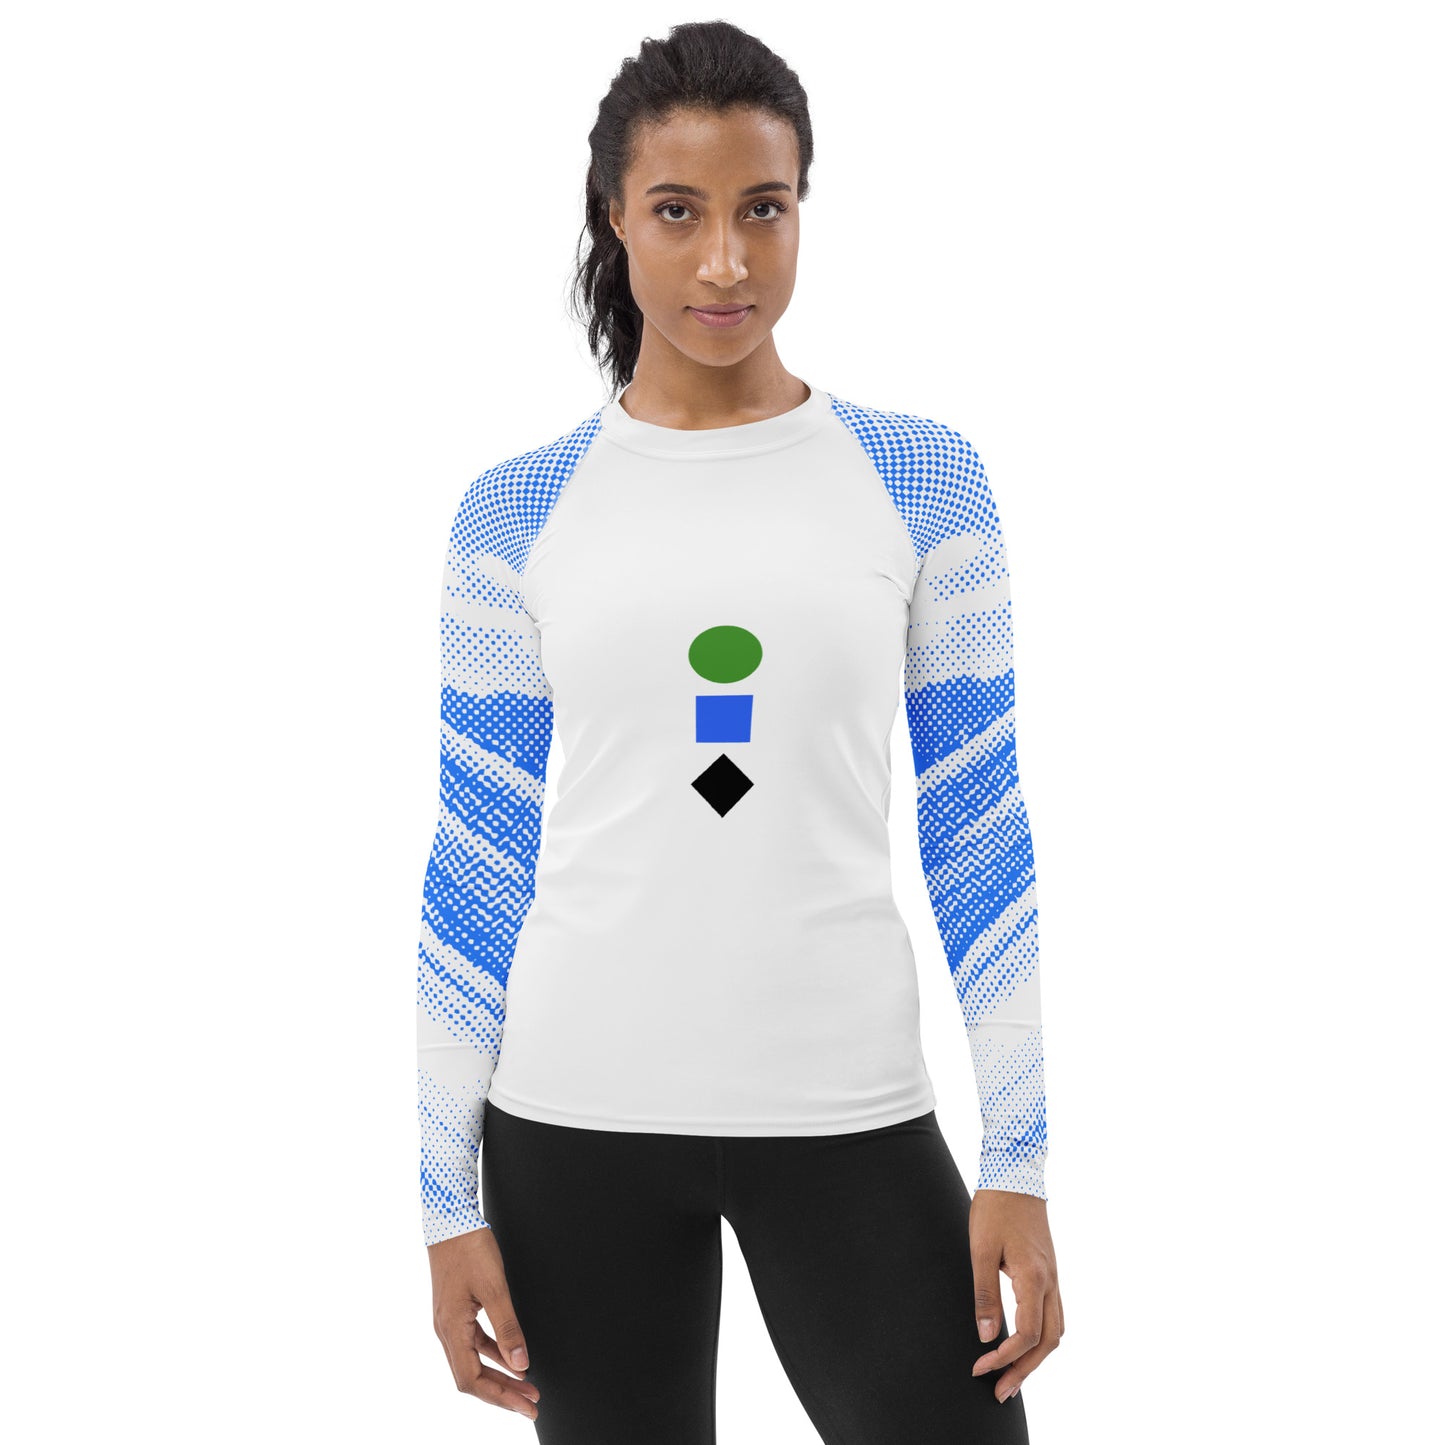 CS0040 - 02008 - Ski Icons Women's Rash Guard (Blue)